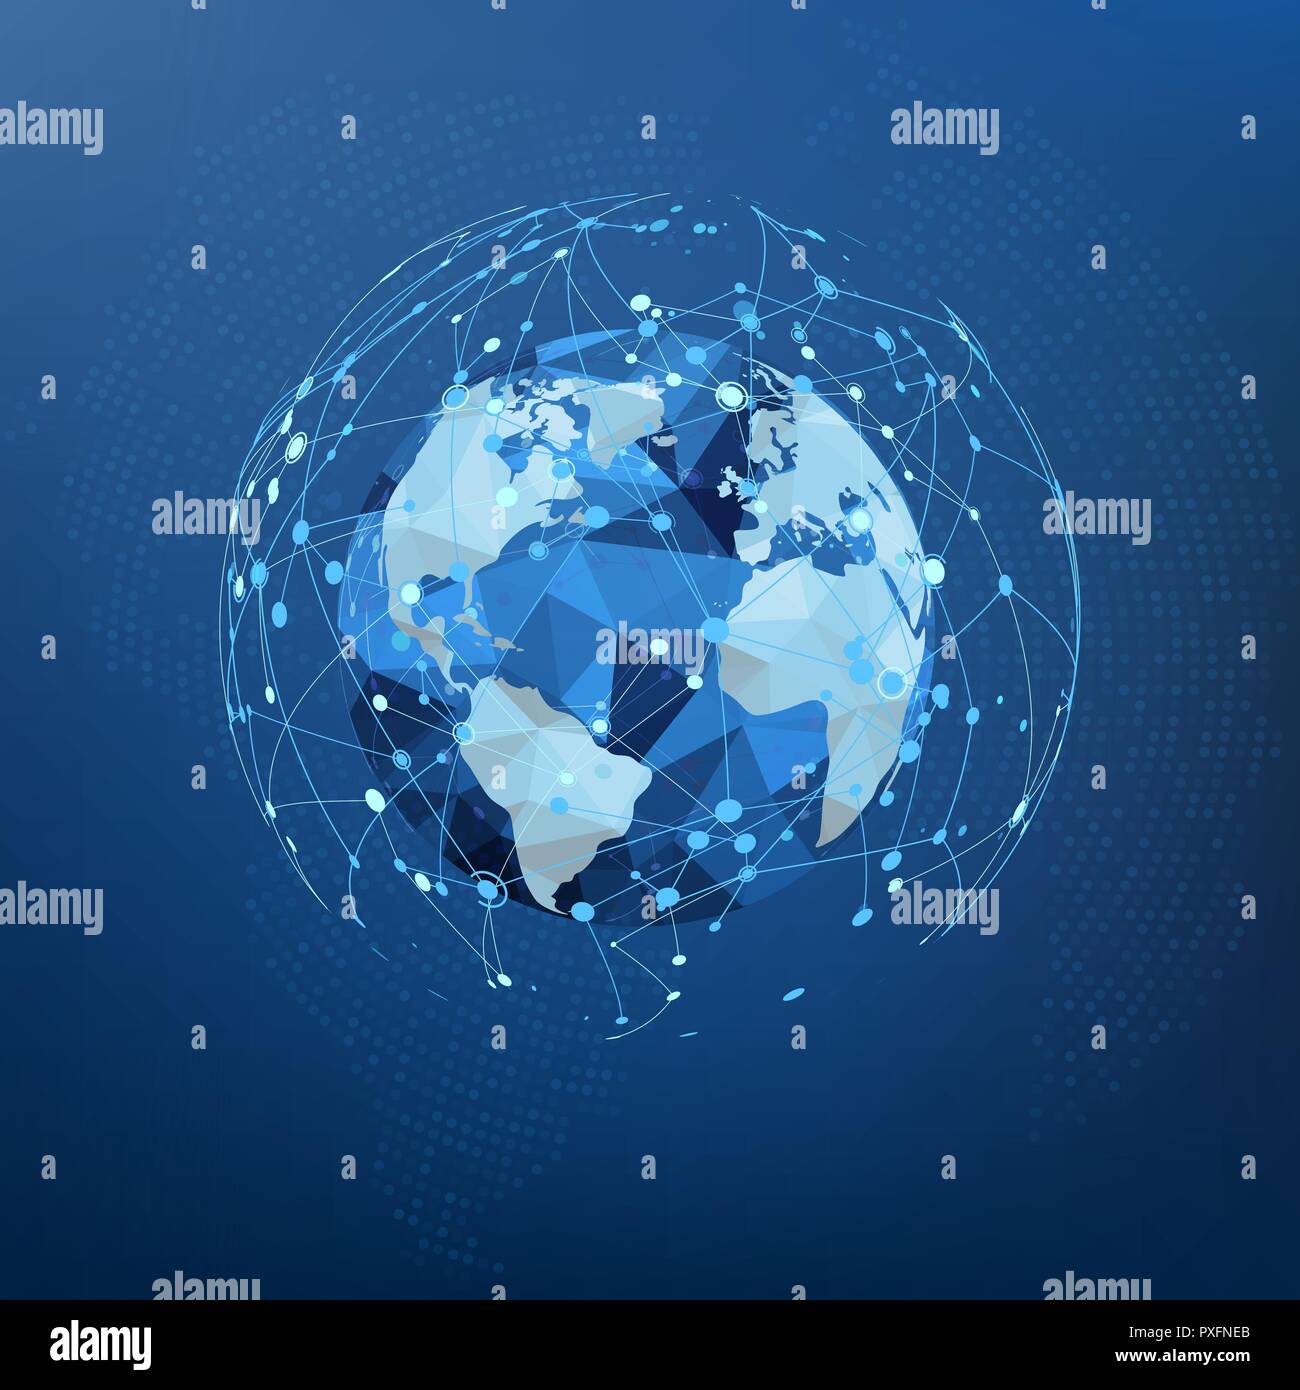 Globales Netzwerk Verbindung. Polygonale Weltkarte. Punkte und Linien World Wide Web Struktur. Vector Illustration Stock Vektor